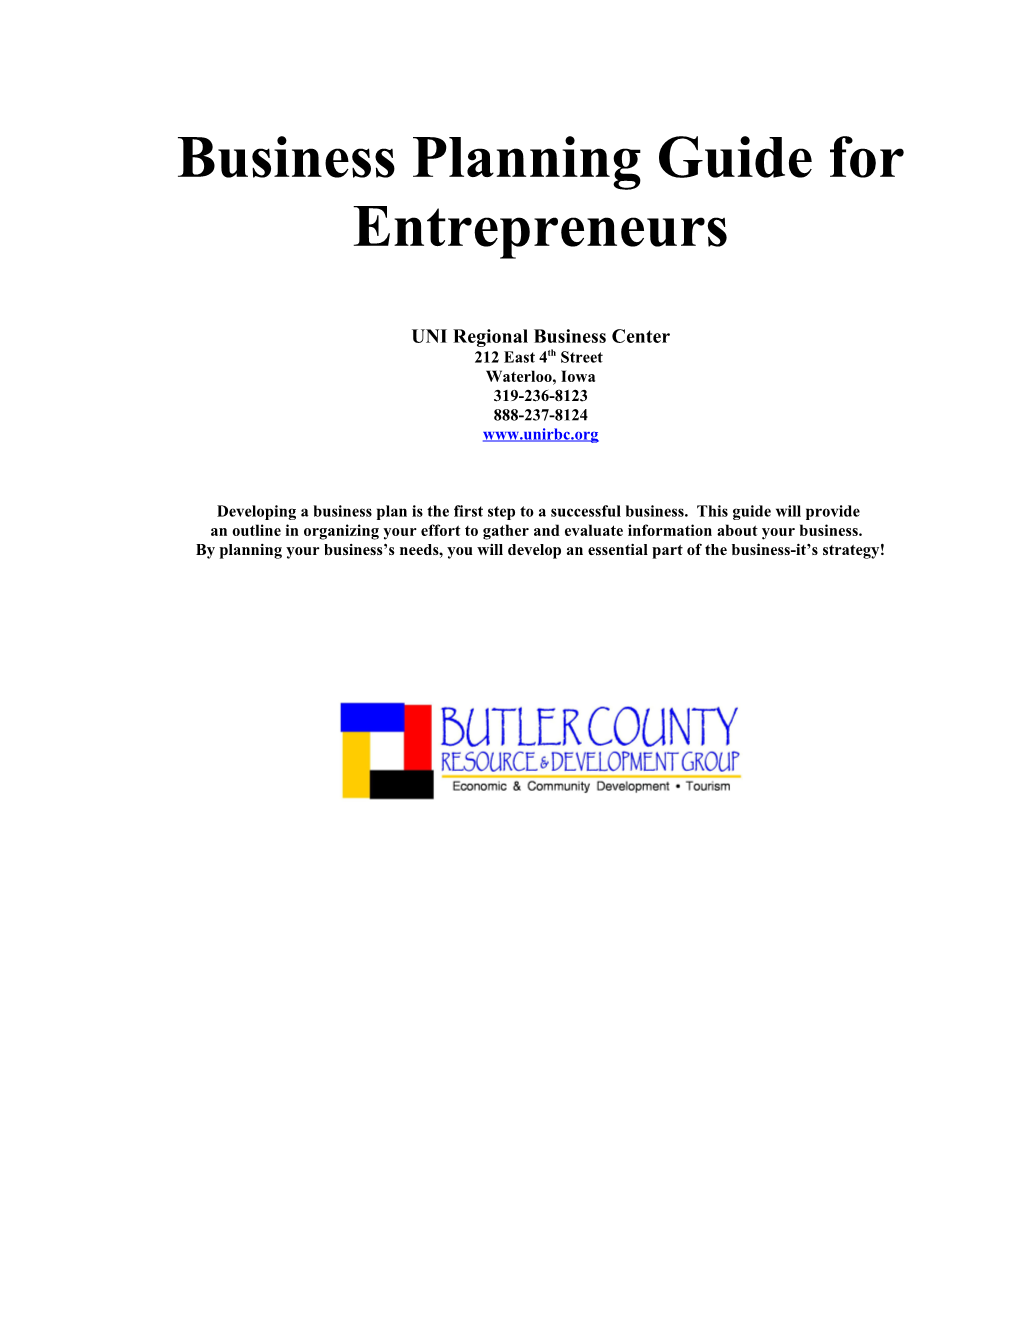 Business Planning Guide For Entrepreneurs